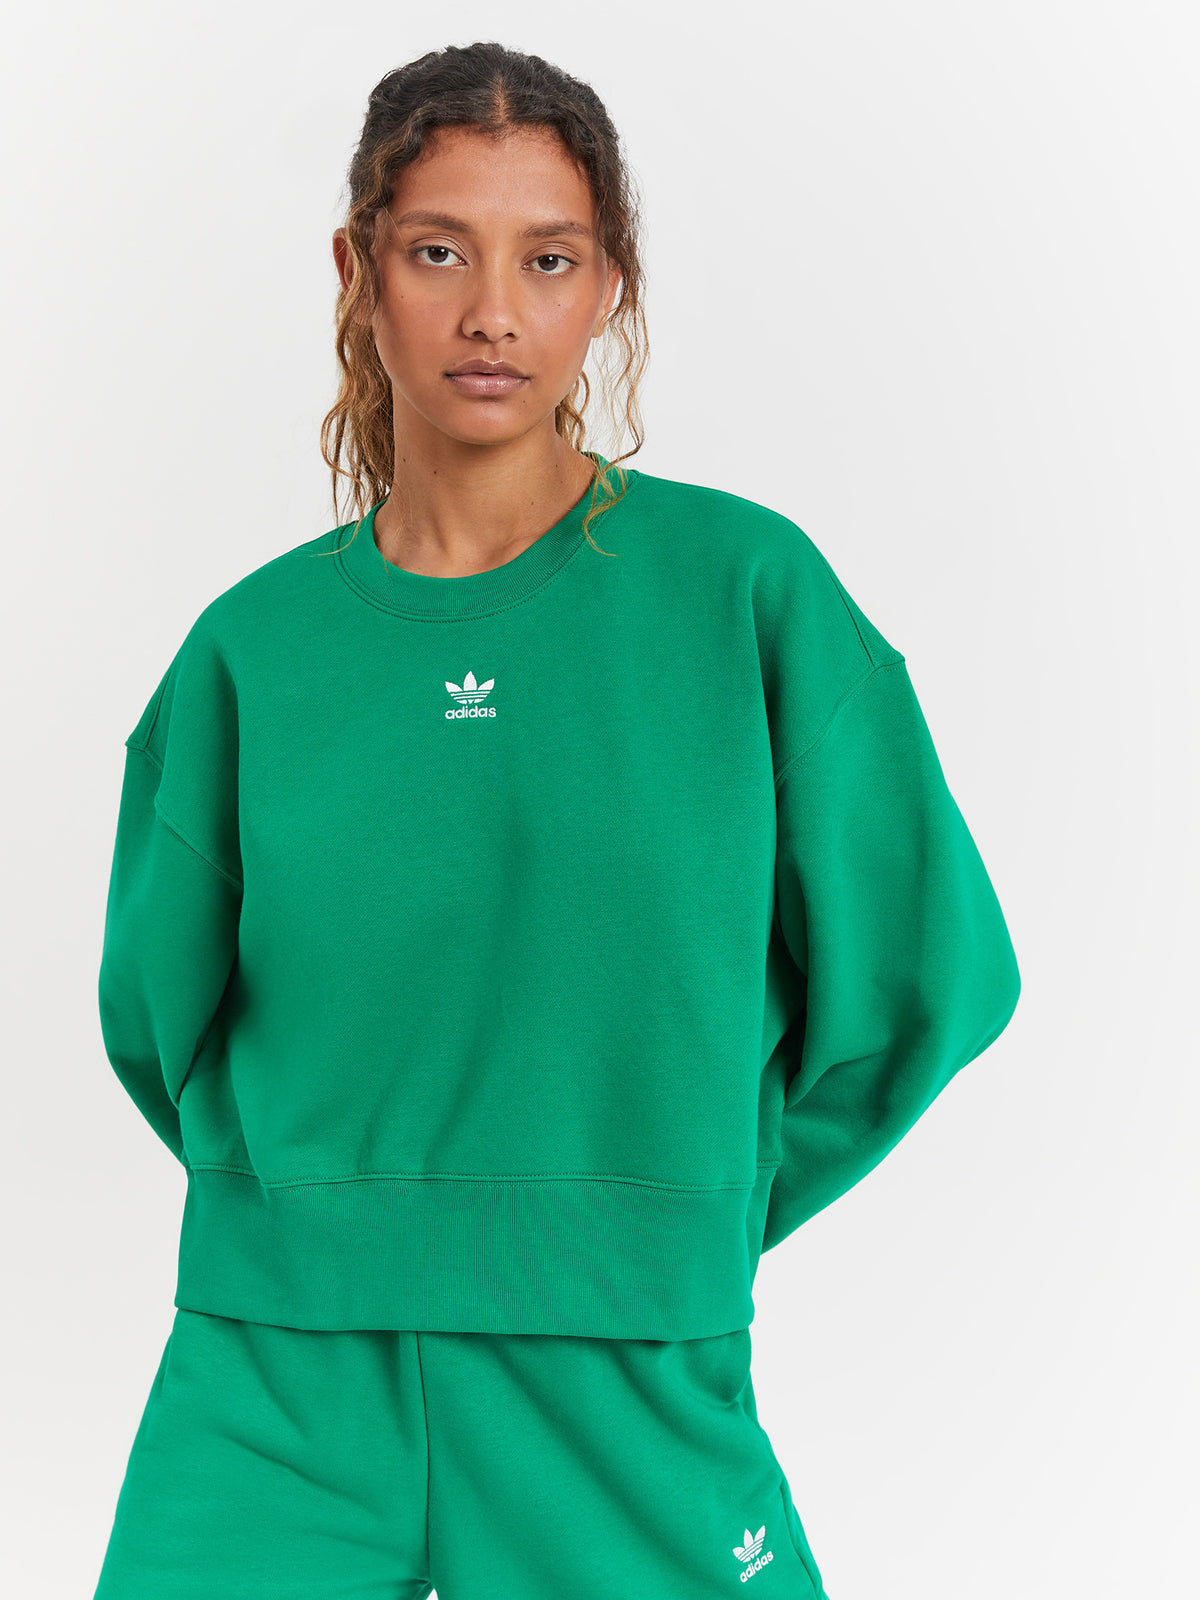 Adicolor Essentials Crew Sweatshirt in Green